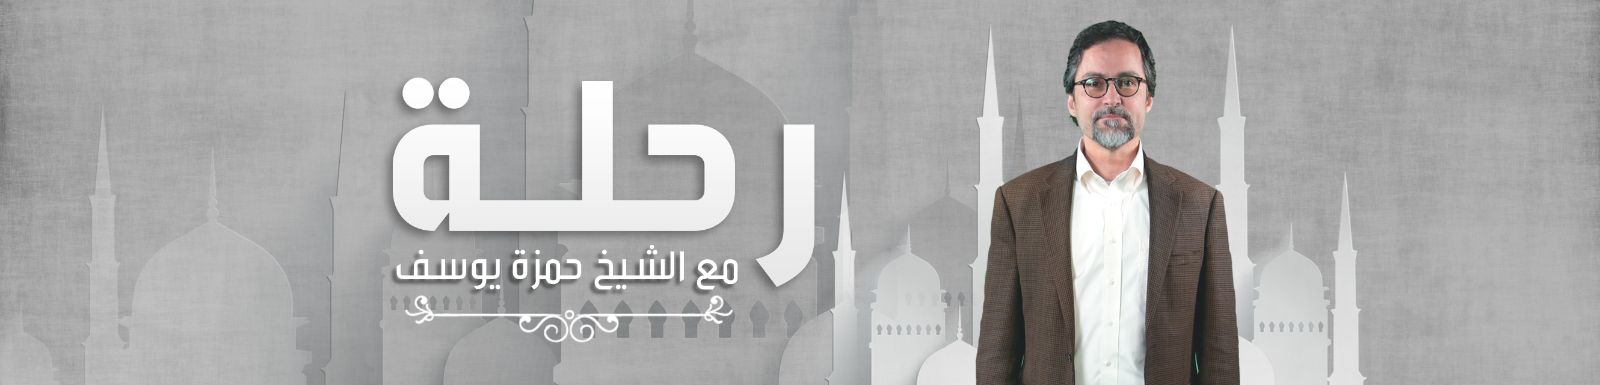 تحميل برنامج رحلة مع حمزة يوسف الحلقة 20 شاهد نت 2016